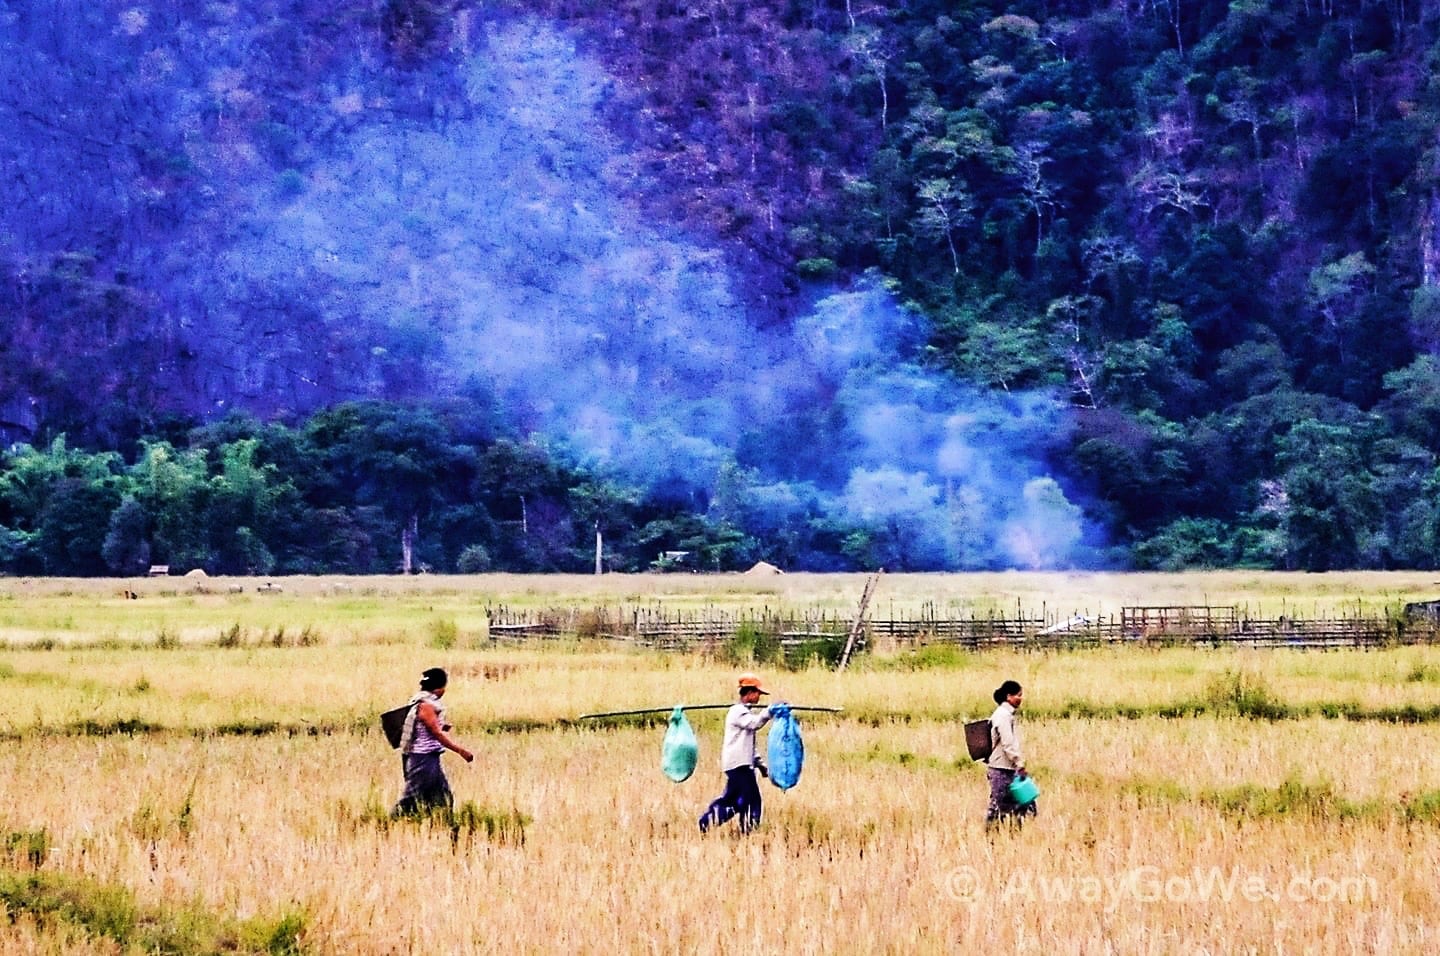 farmers in a field in Laos